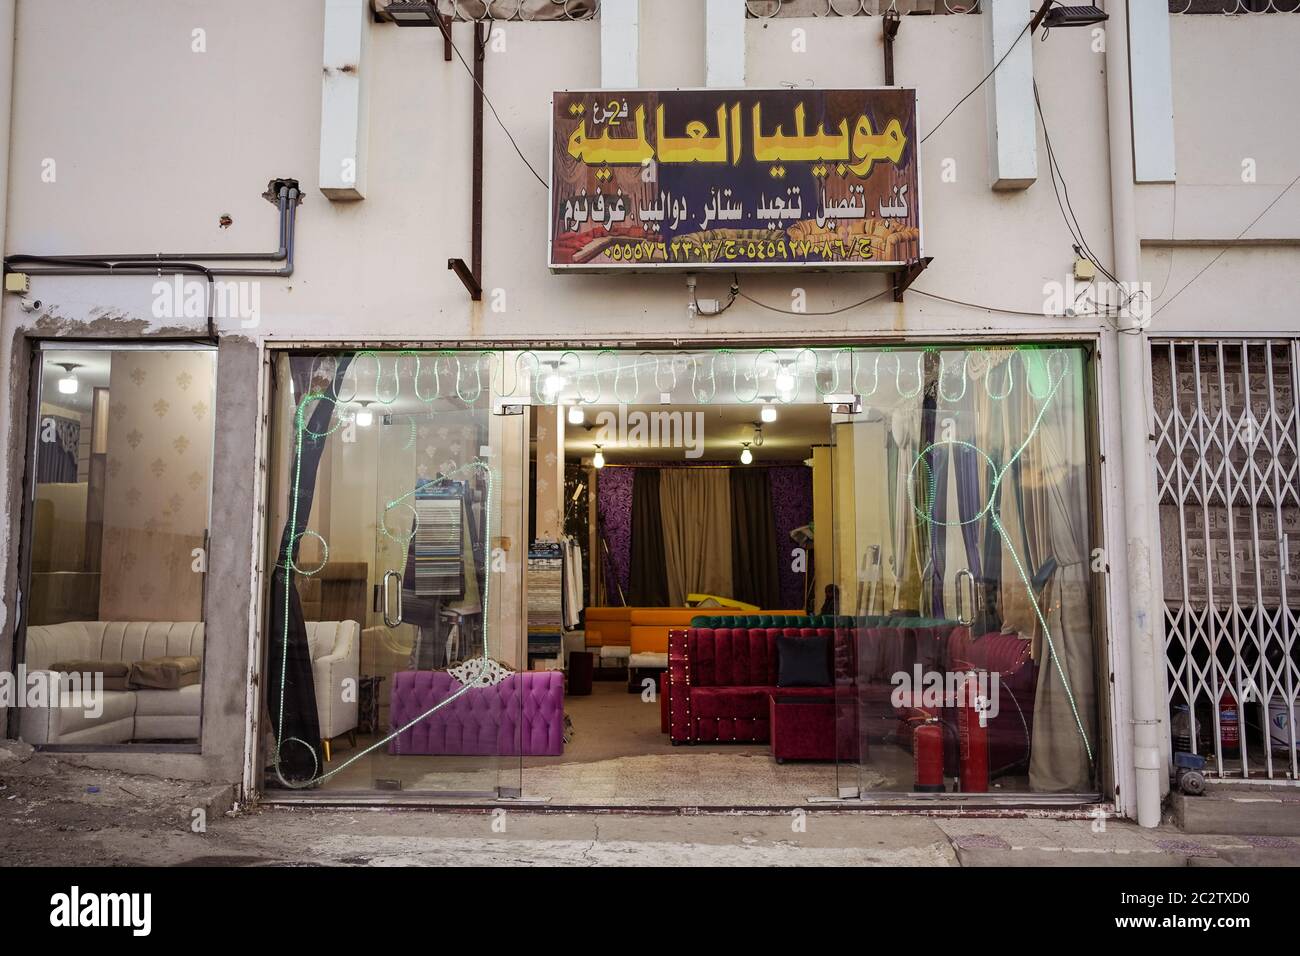 Abha / Saudi Arabia - January 23, 2020: old outdated sofa shop facade Stock Photo